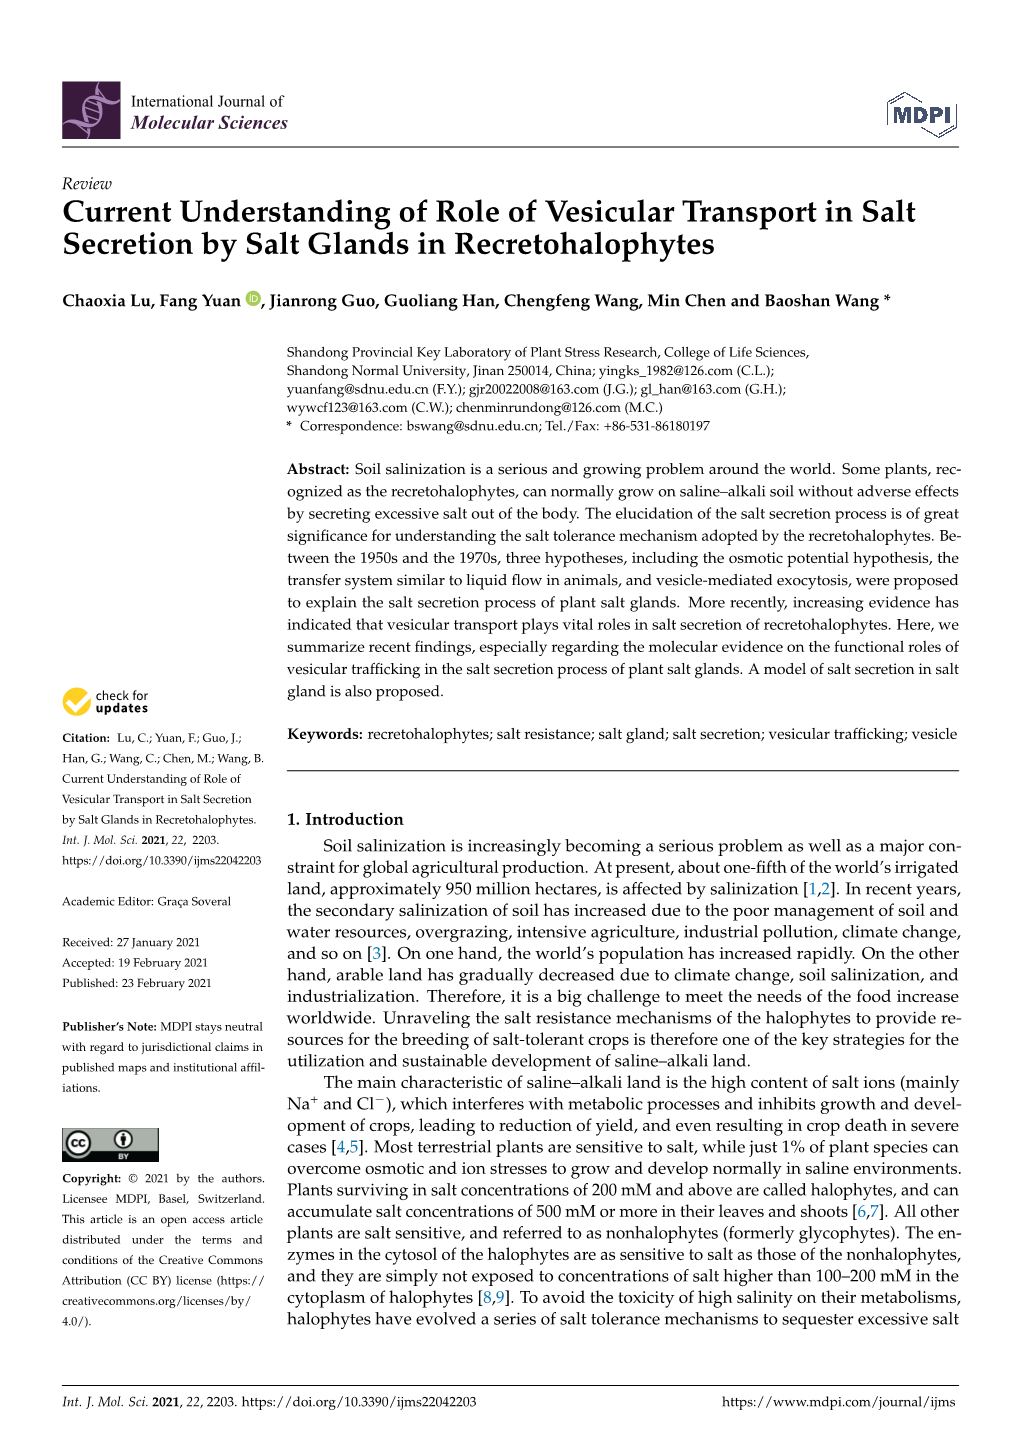 Current Understanding of Role of Vesicular Transport in Salt Secretion by Salt Glands in Recretohalophytes